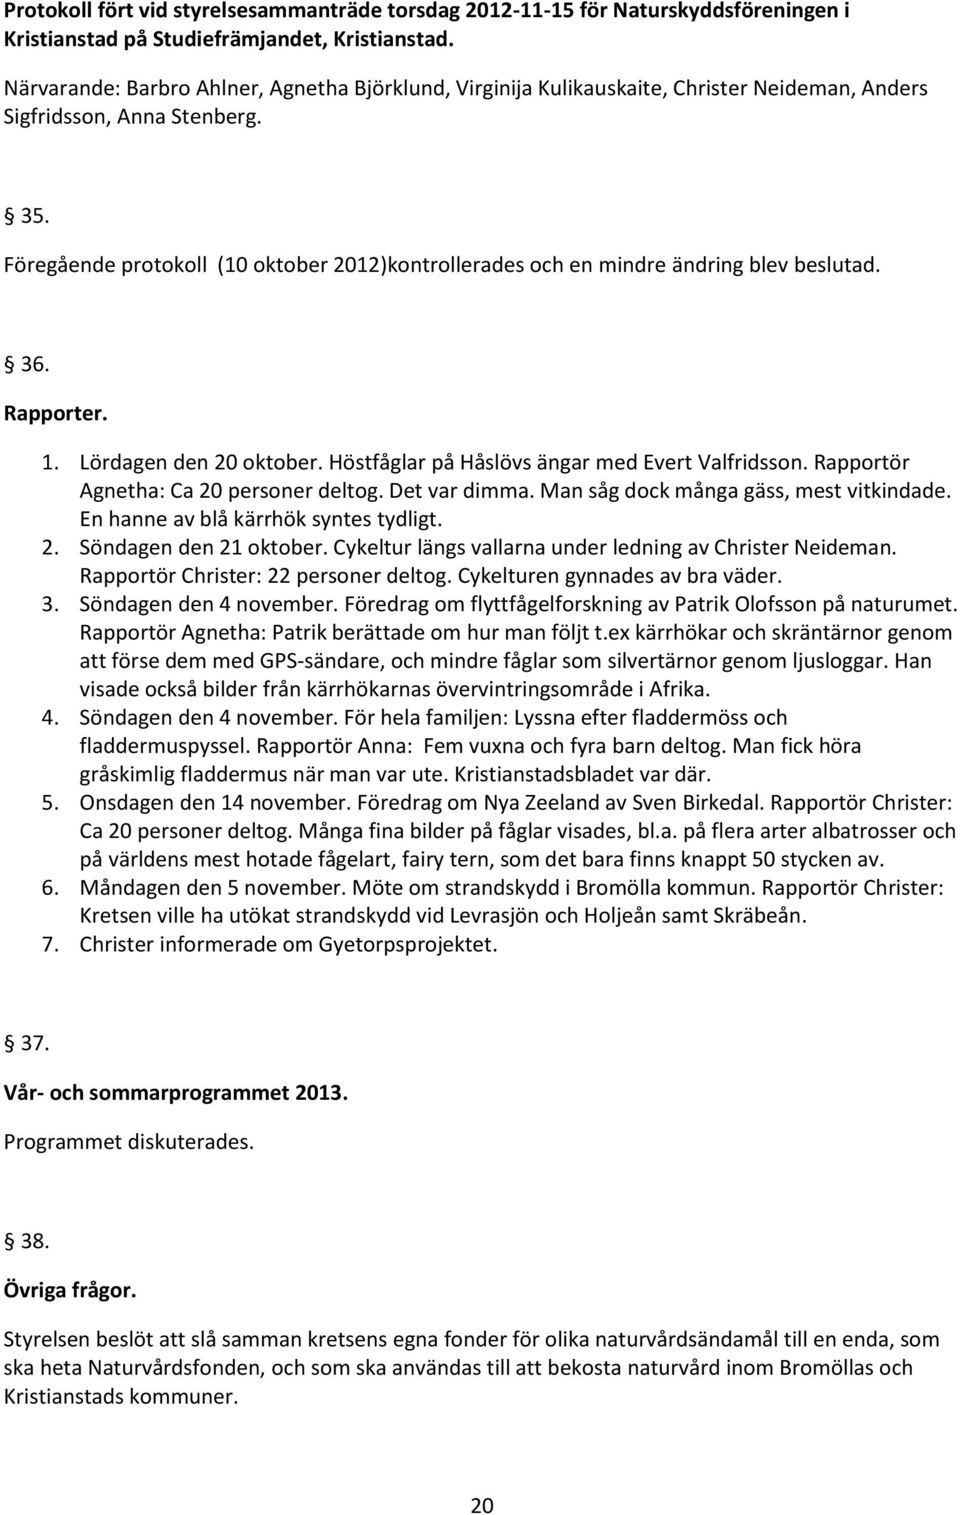 Föregående protokoll (10 oktober 2012)kontrollerades och en mindre ändring blev beslutad. 36. Rapporter. 1. Lördagen den 20 oktober. Höstfåglar på Håslövs ängar med Evert Valfridsson.